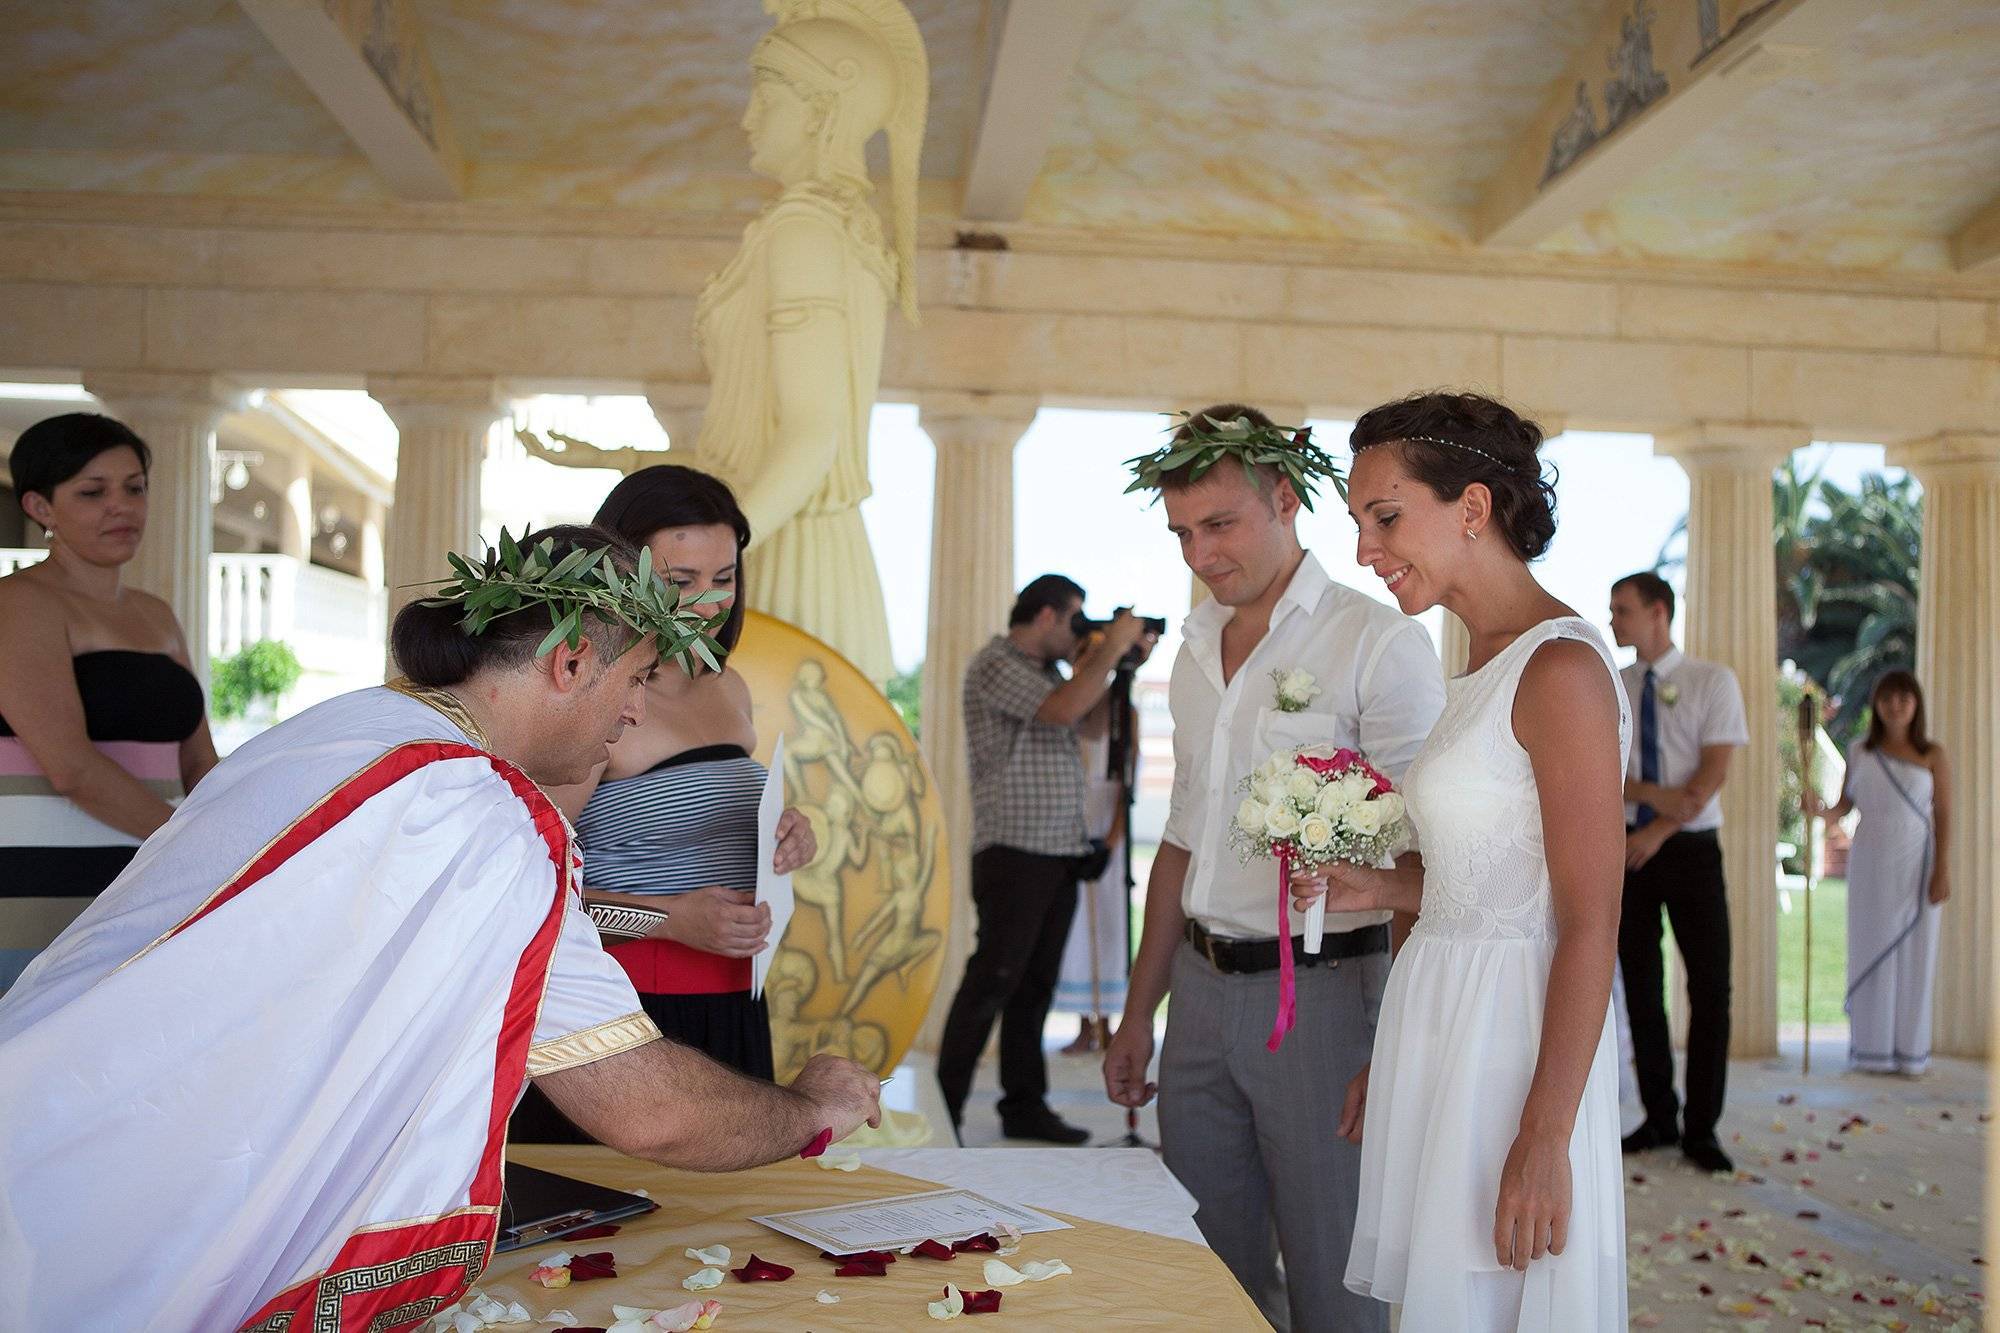 Божественный выбор: учимся делать свадебные прически в греческом стиле